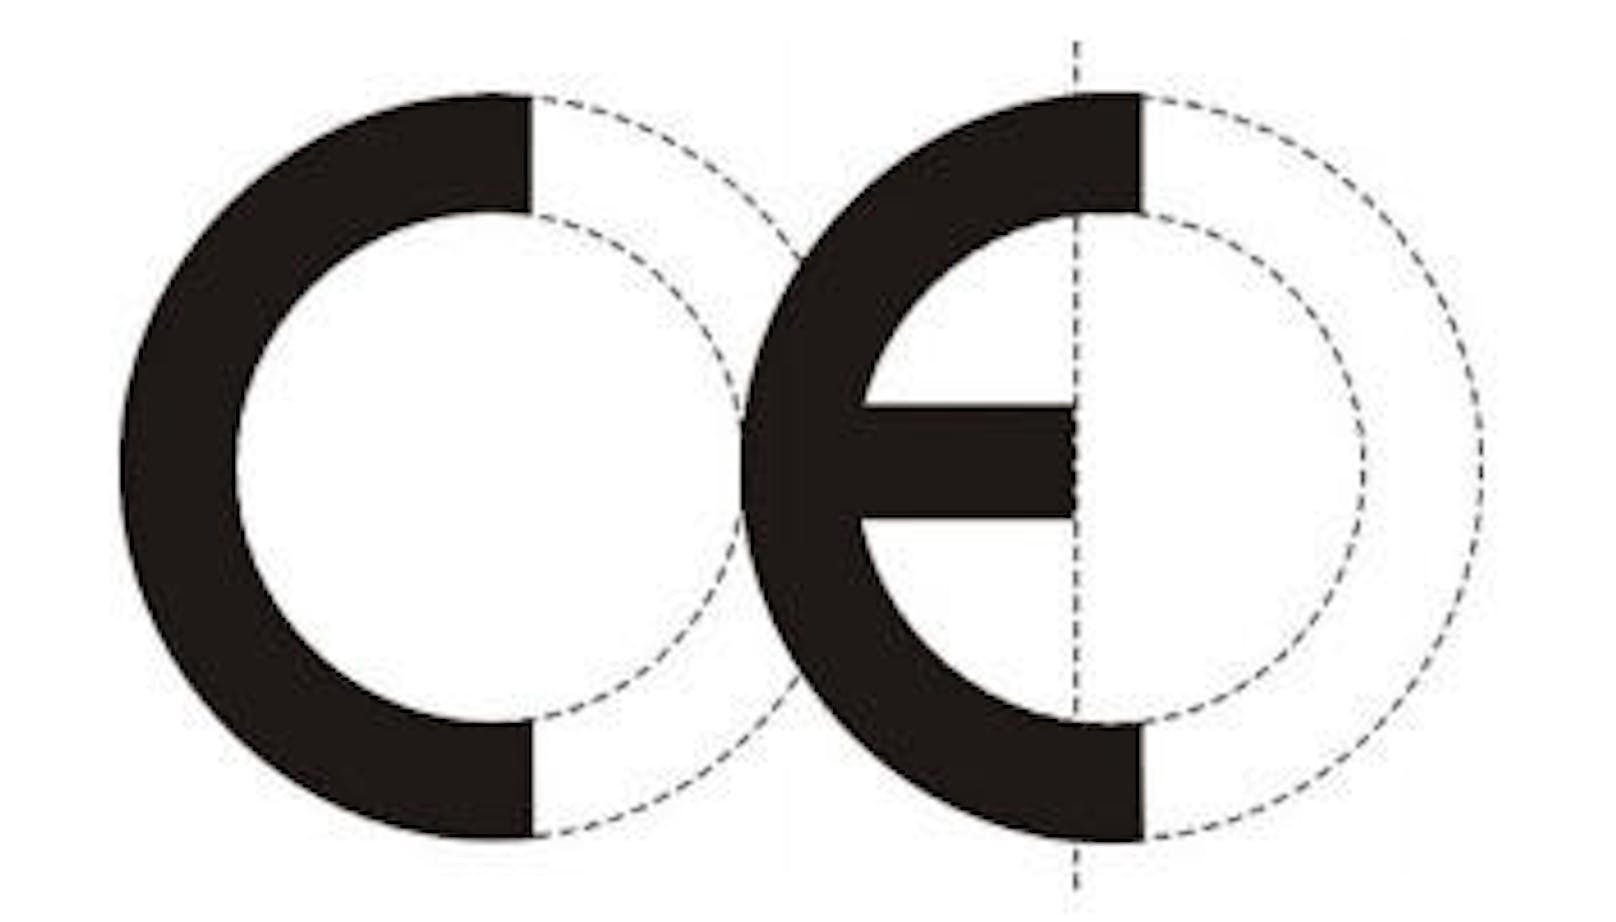 Wichtig ist, auf die CE-Kennzeichnung zu achten. Sie gewährleistet eine Herstellung nach EU-Standards.